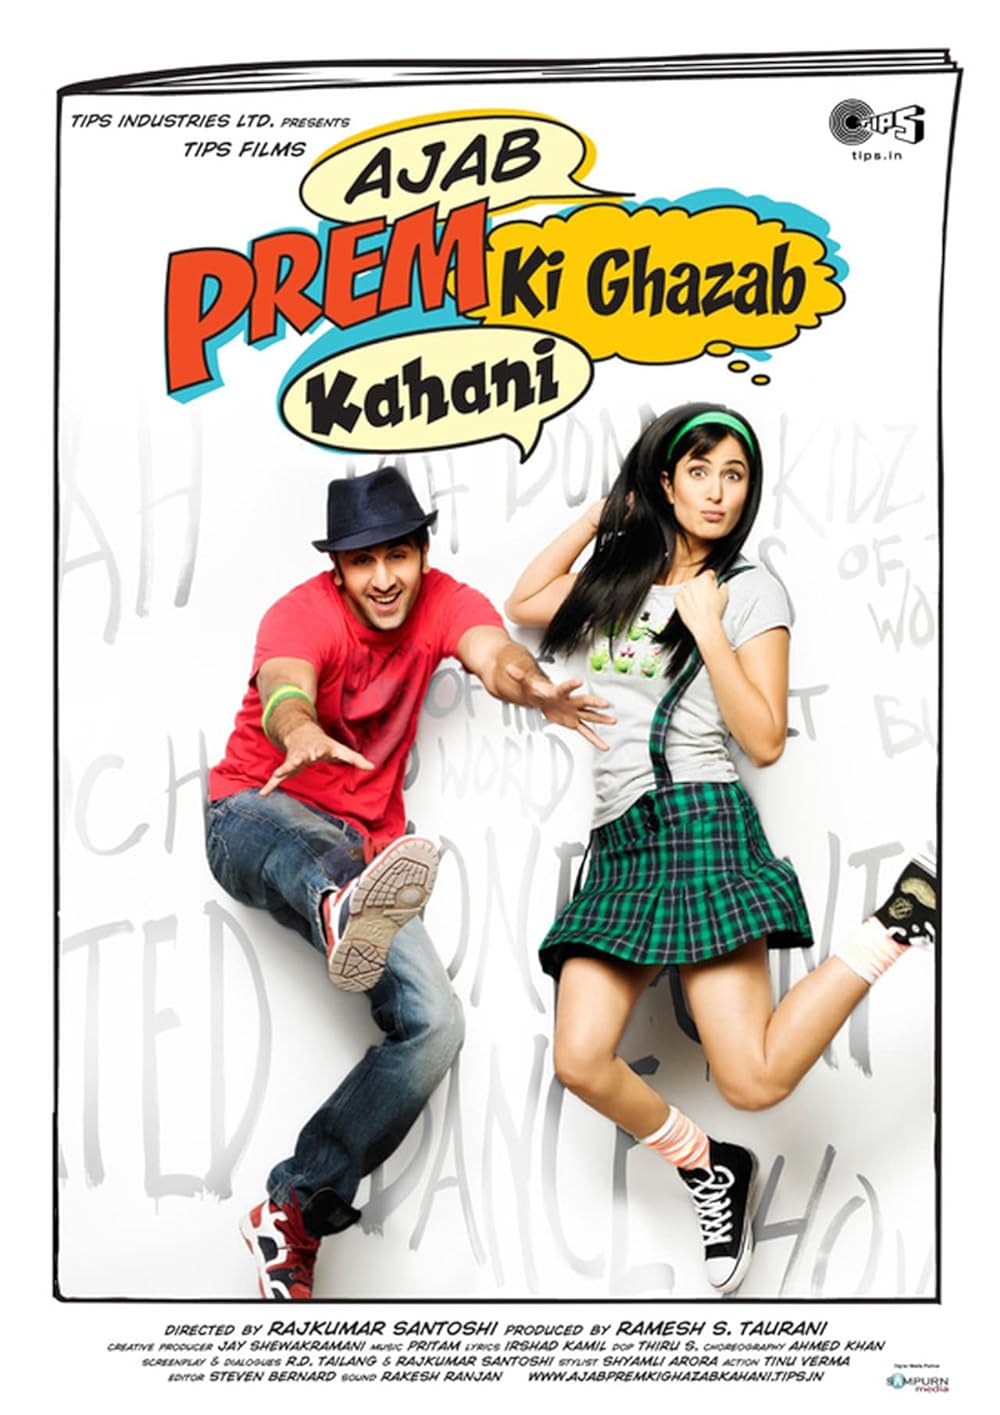 Ajab Prem Ki Ghazab Kahani Movie Poster